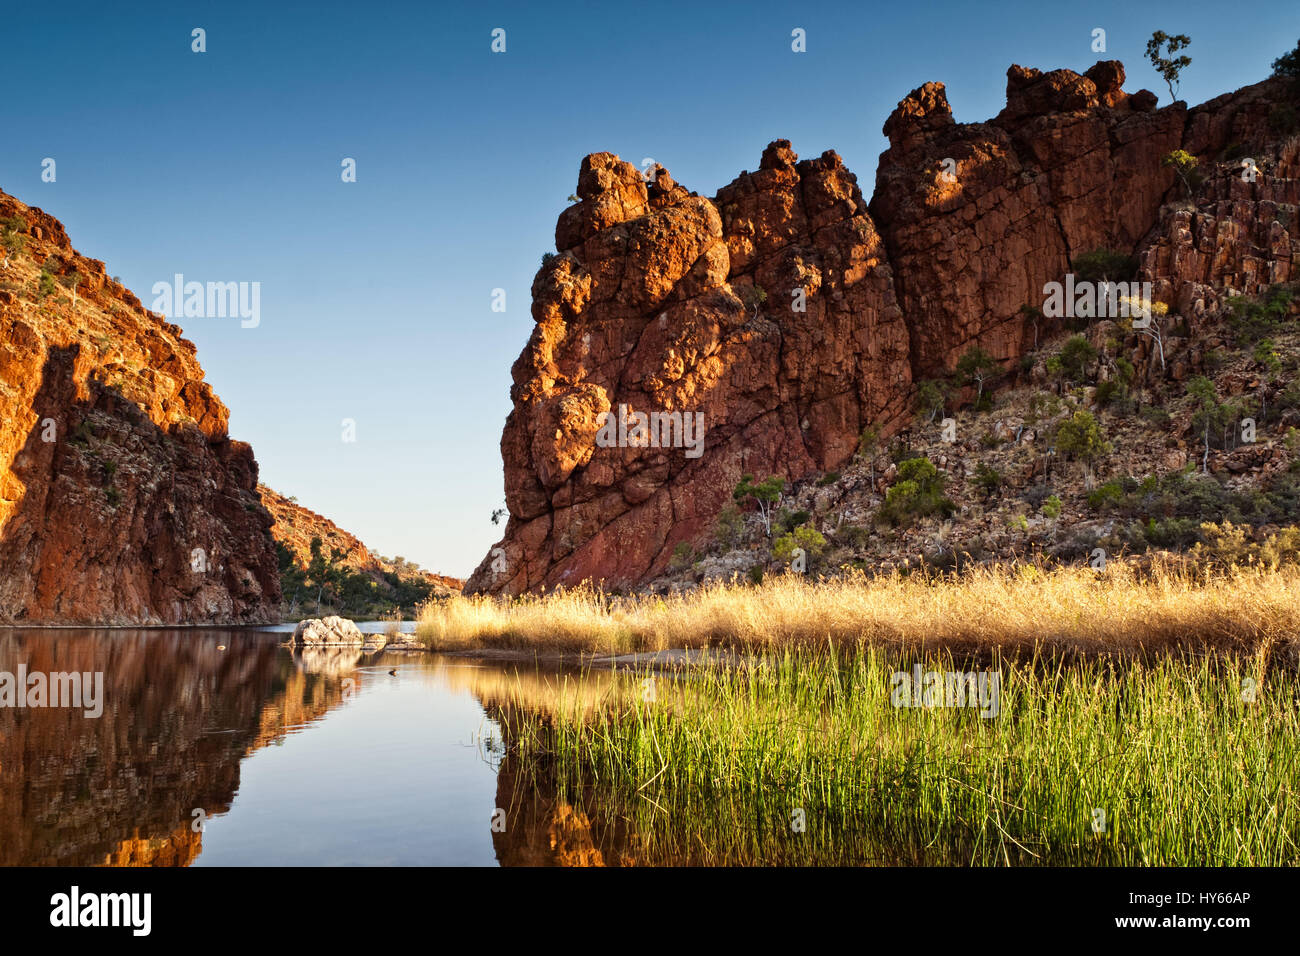 Reflexiones de formaciones rocosas en Glen Helen Gorge orificio de agua en el Territorio del Norte de Australia Central Foto de stock